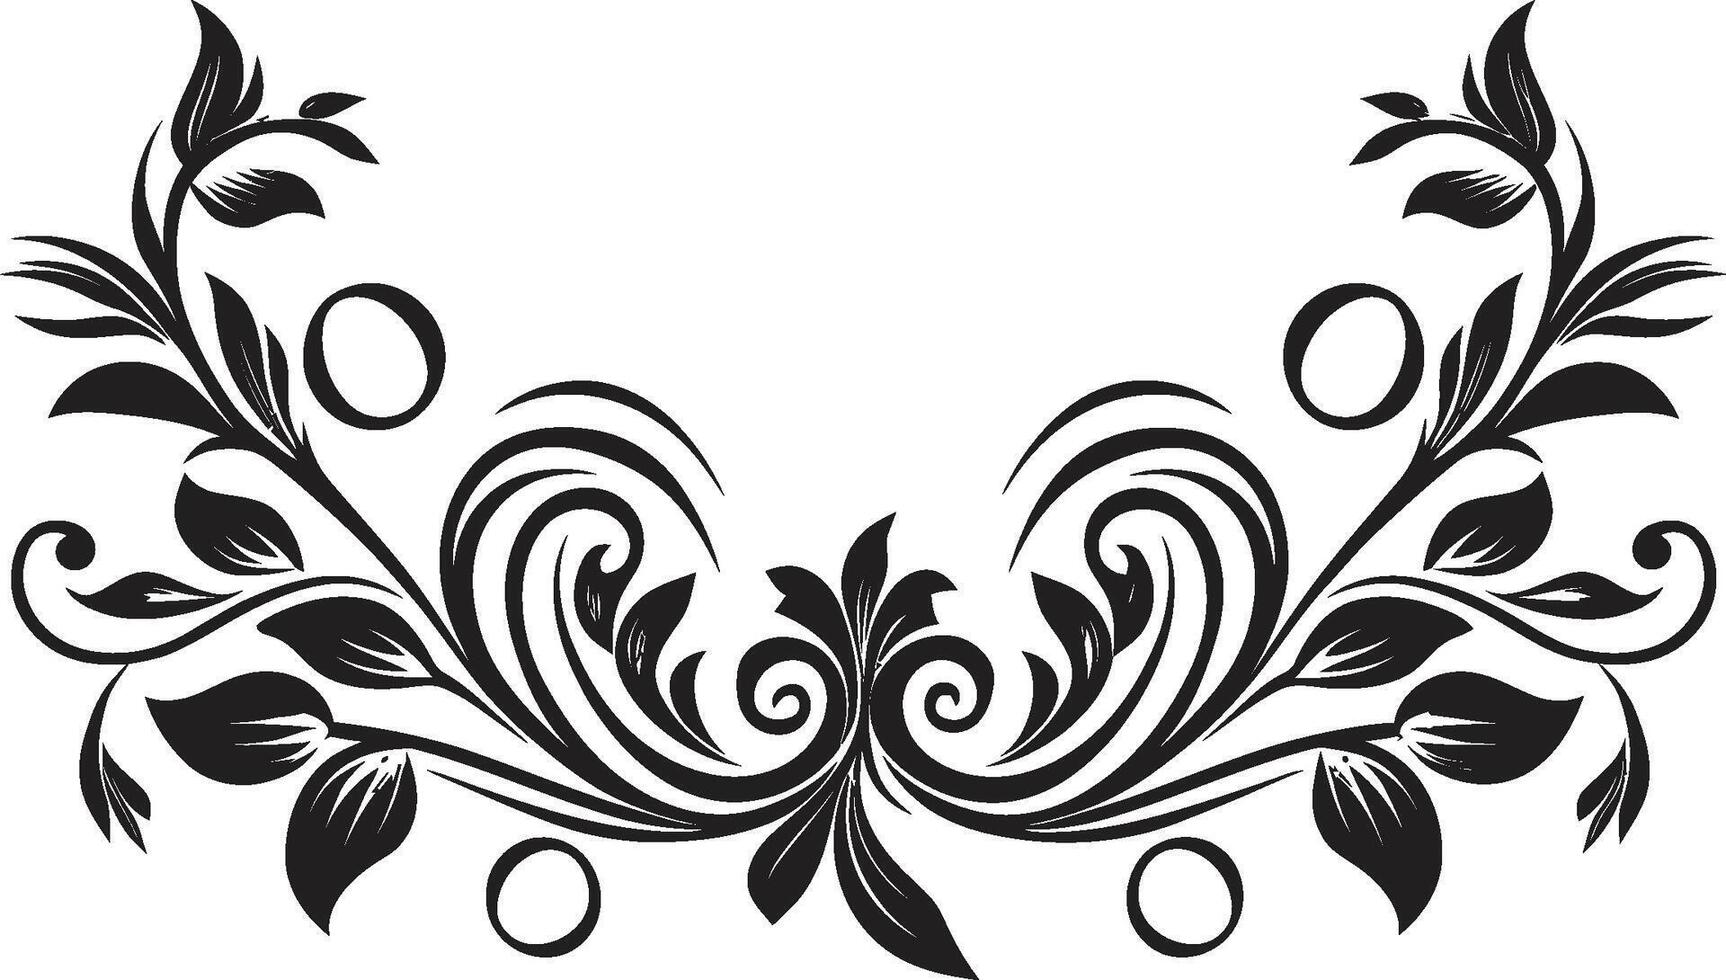 ornato lineamenti elegante nero logo evidenziazione decorativo elemento mulinello di fantasia elegante vettore design con scarabocchio decorazioni